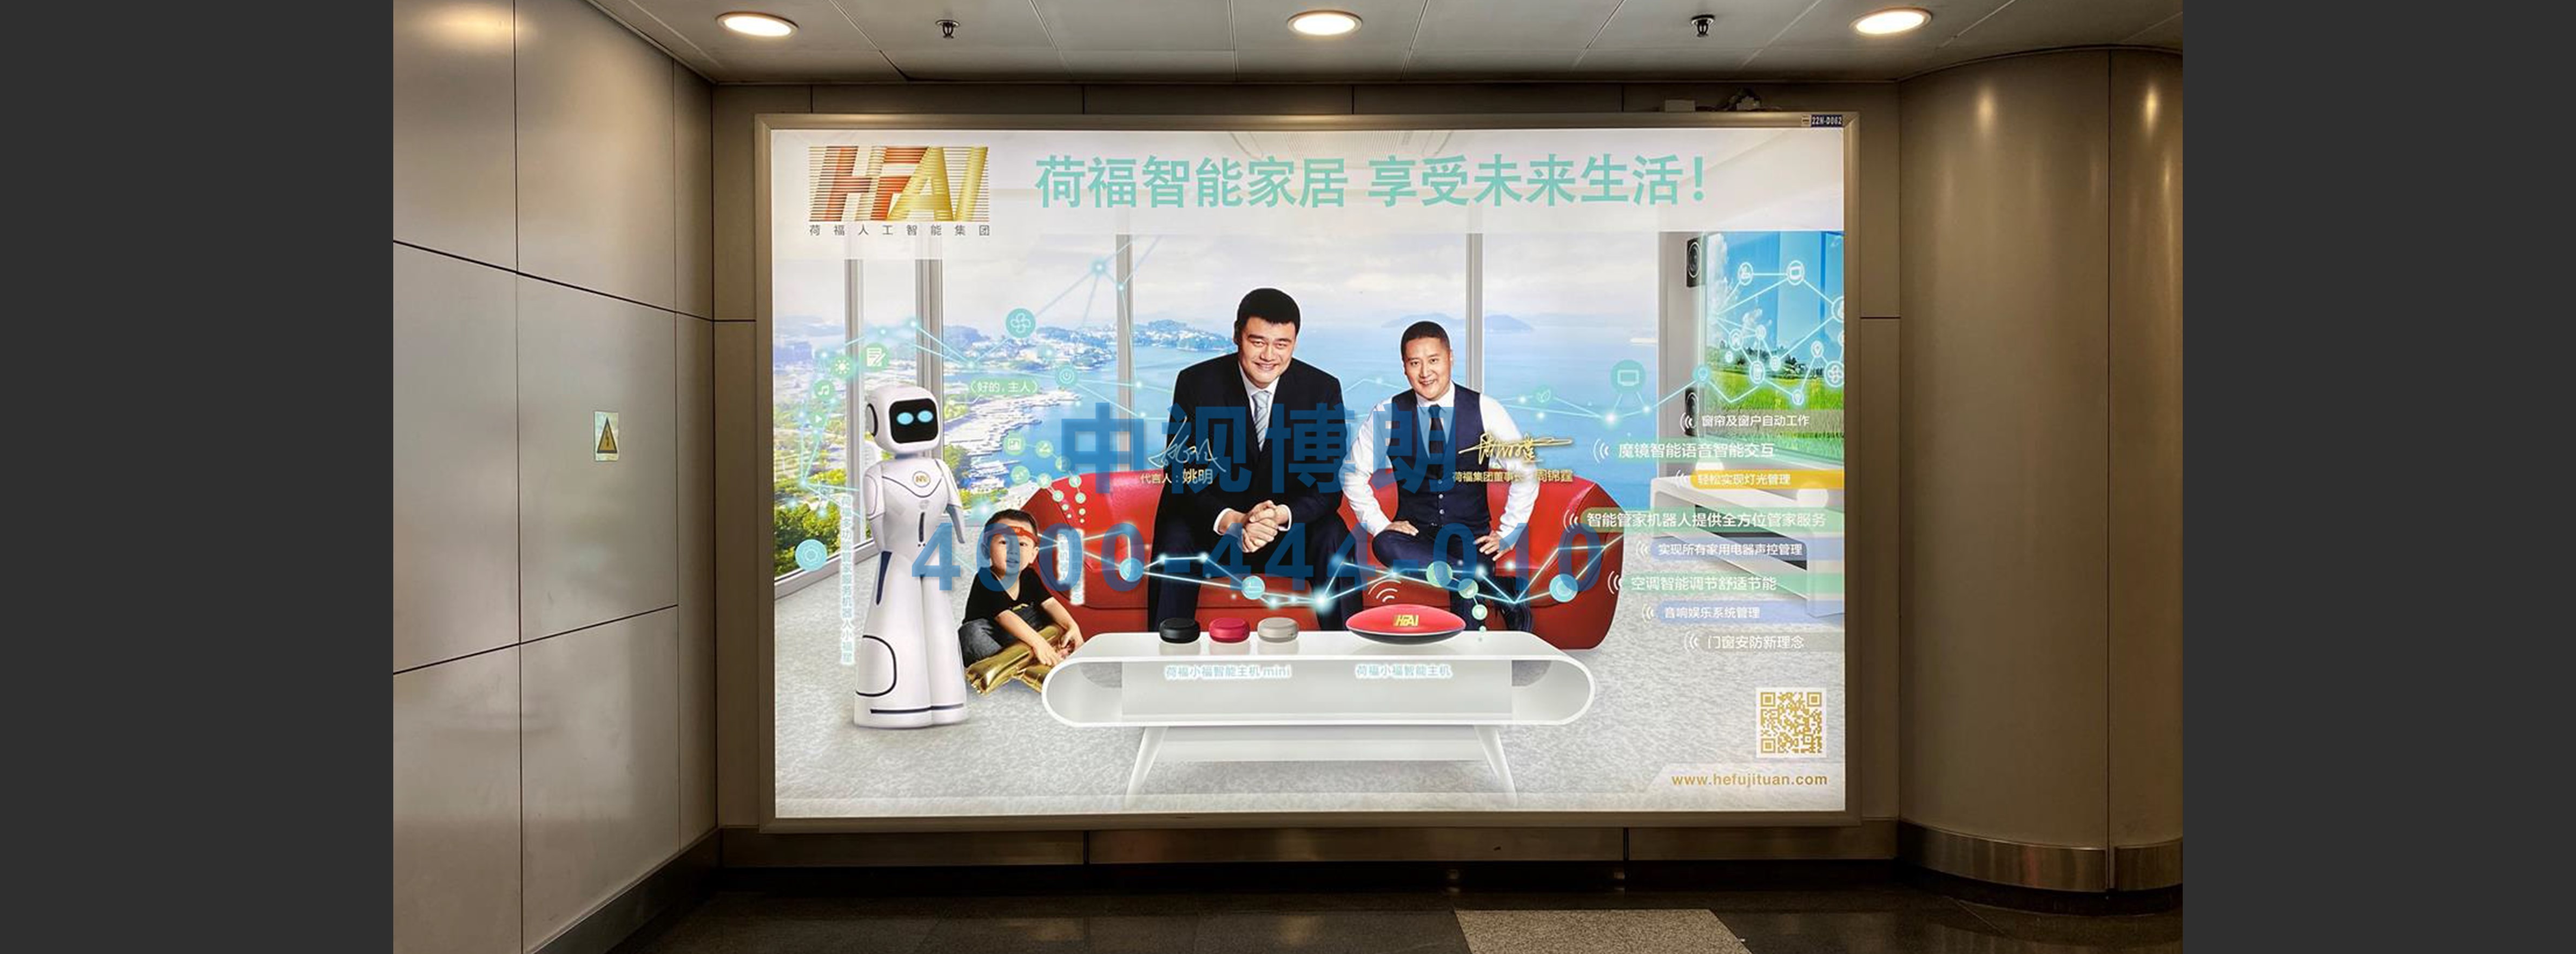 北京首都机场广告-T2 Domestic Departure Hall Light Box D062